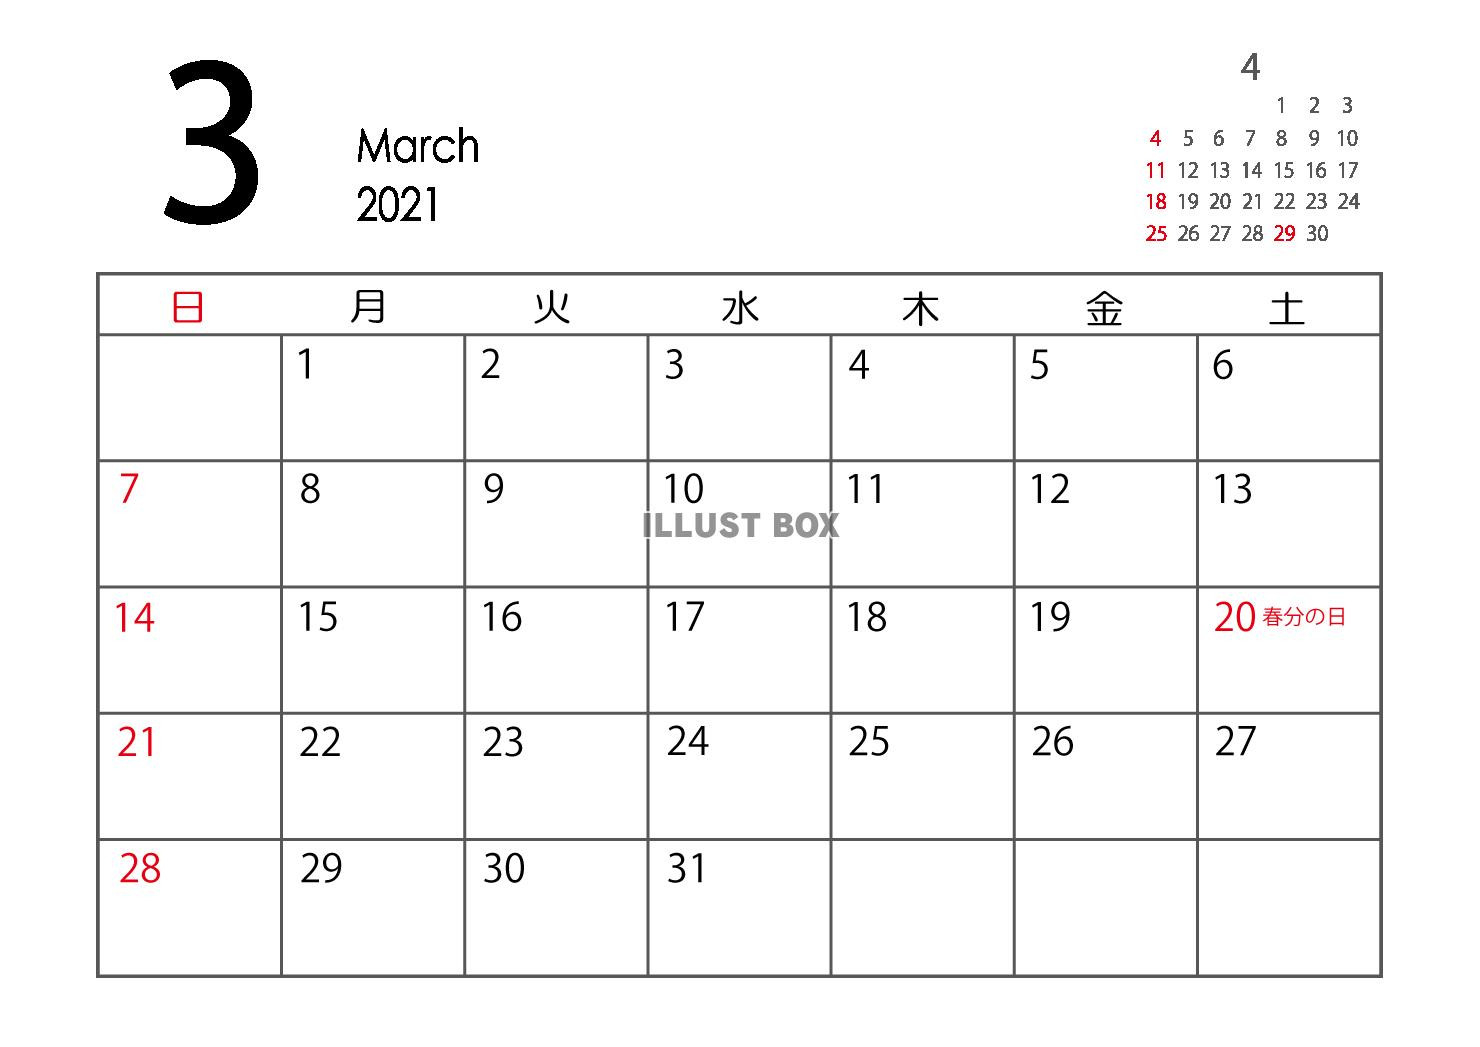 ☯ カレンダー 2021 3 月 - 面白い - ニュース-2021年度カレンダー 印刷用 無料